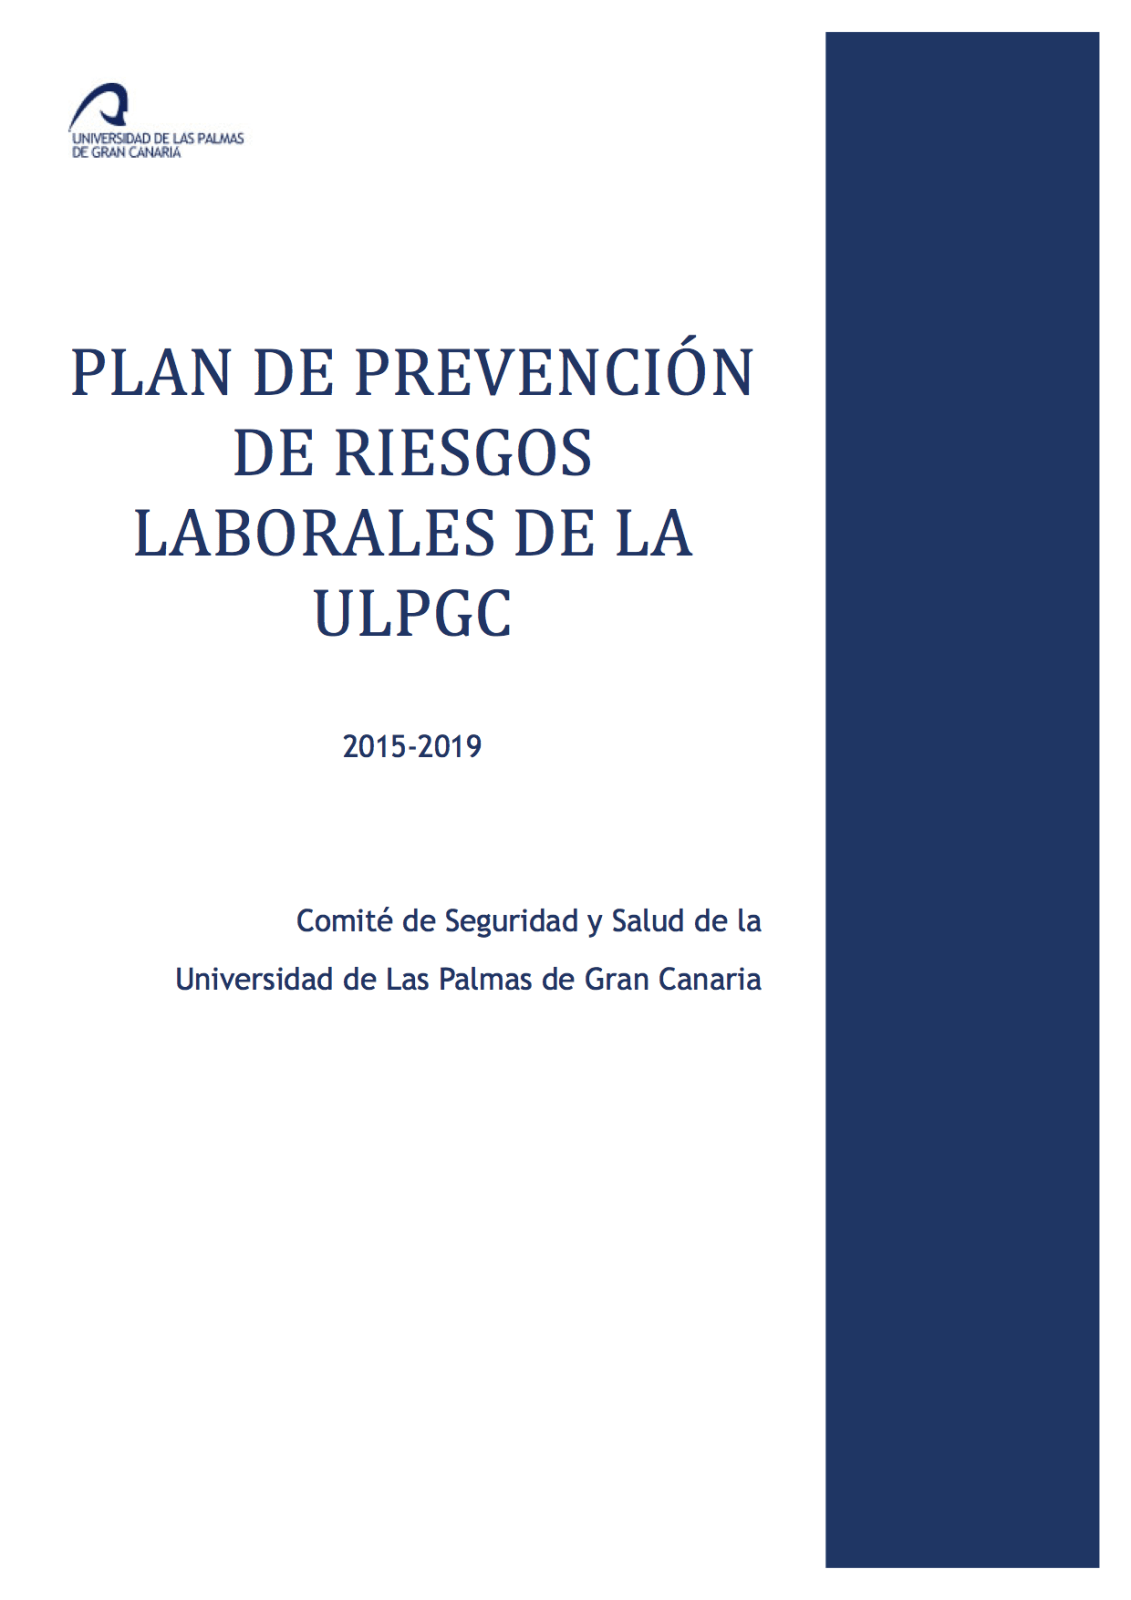 plan de prevencion de la ulpgc 2015-2019